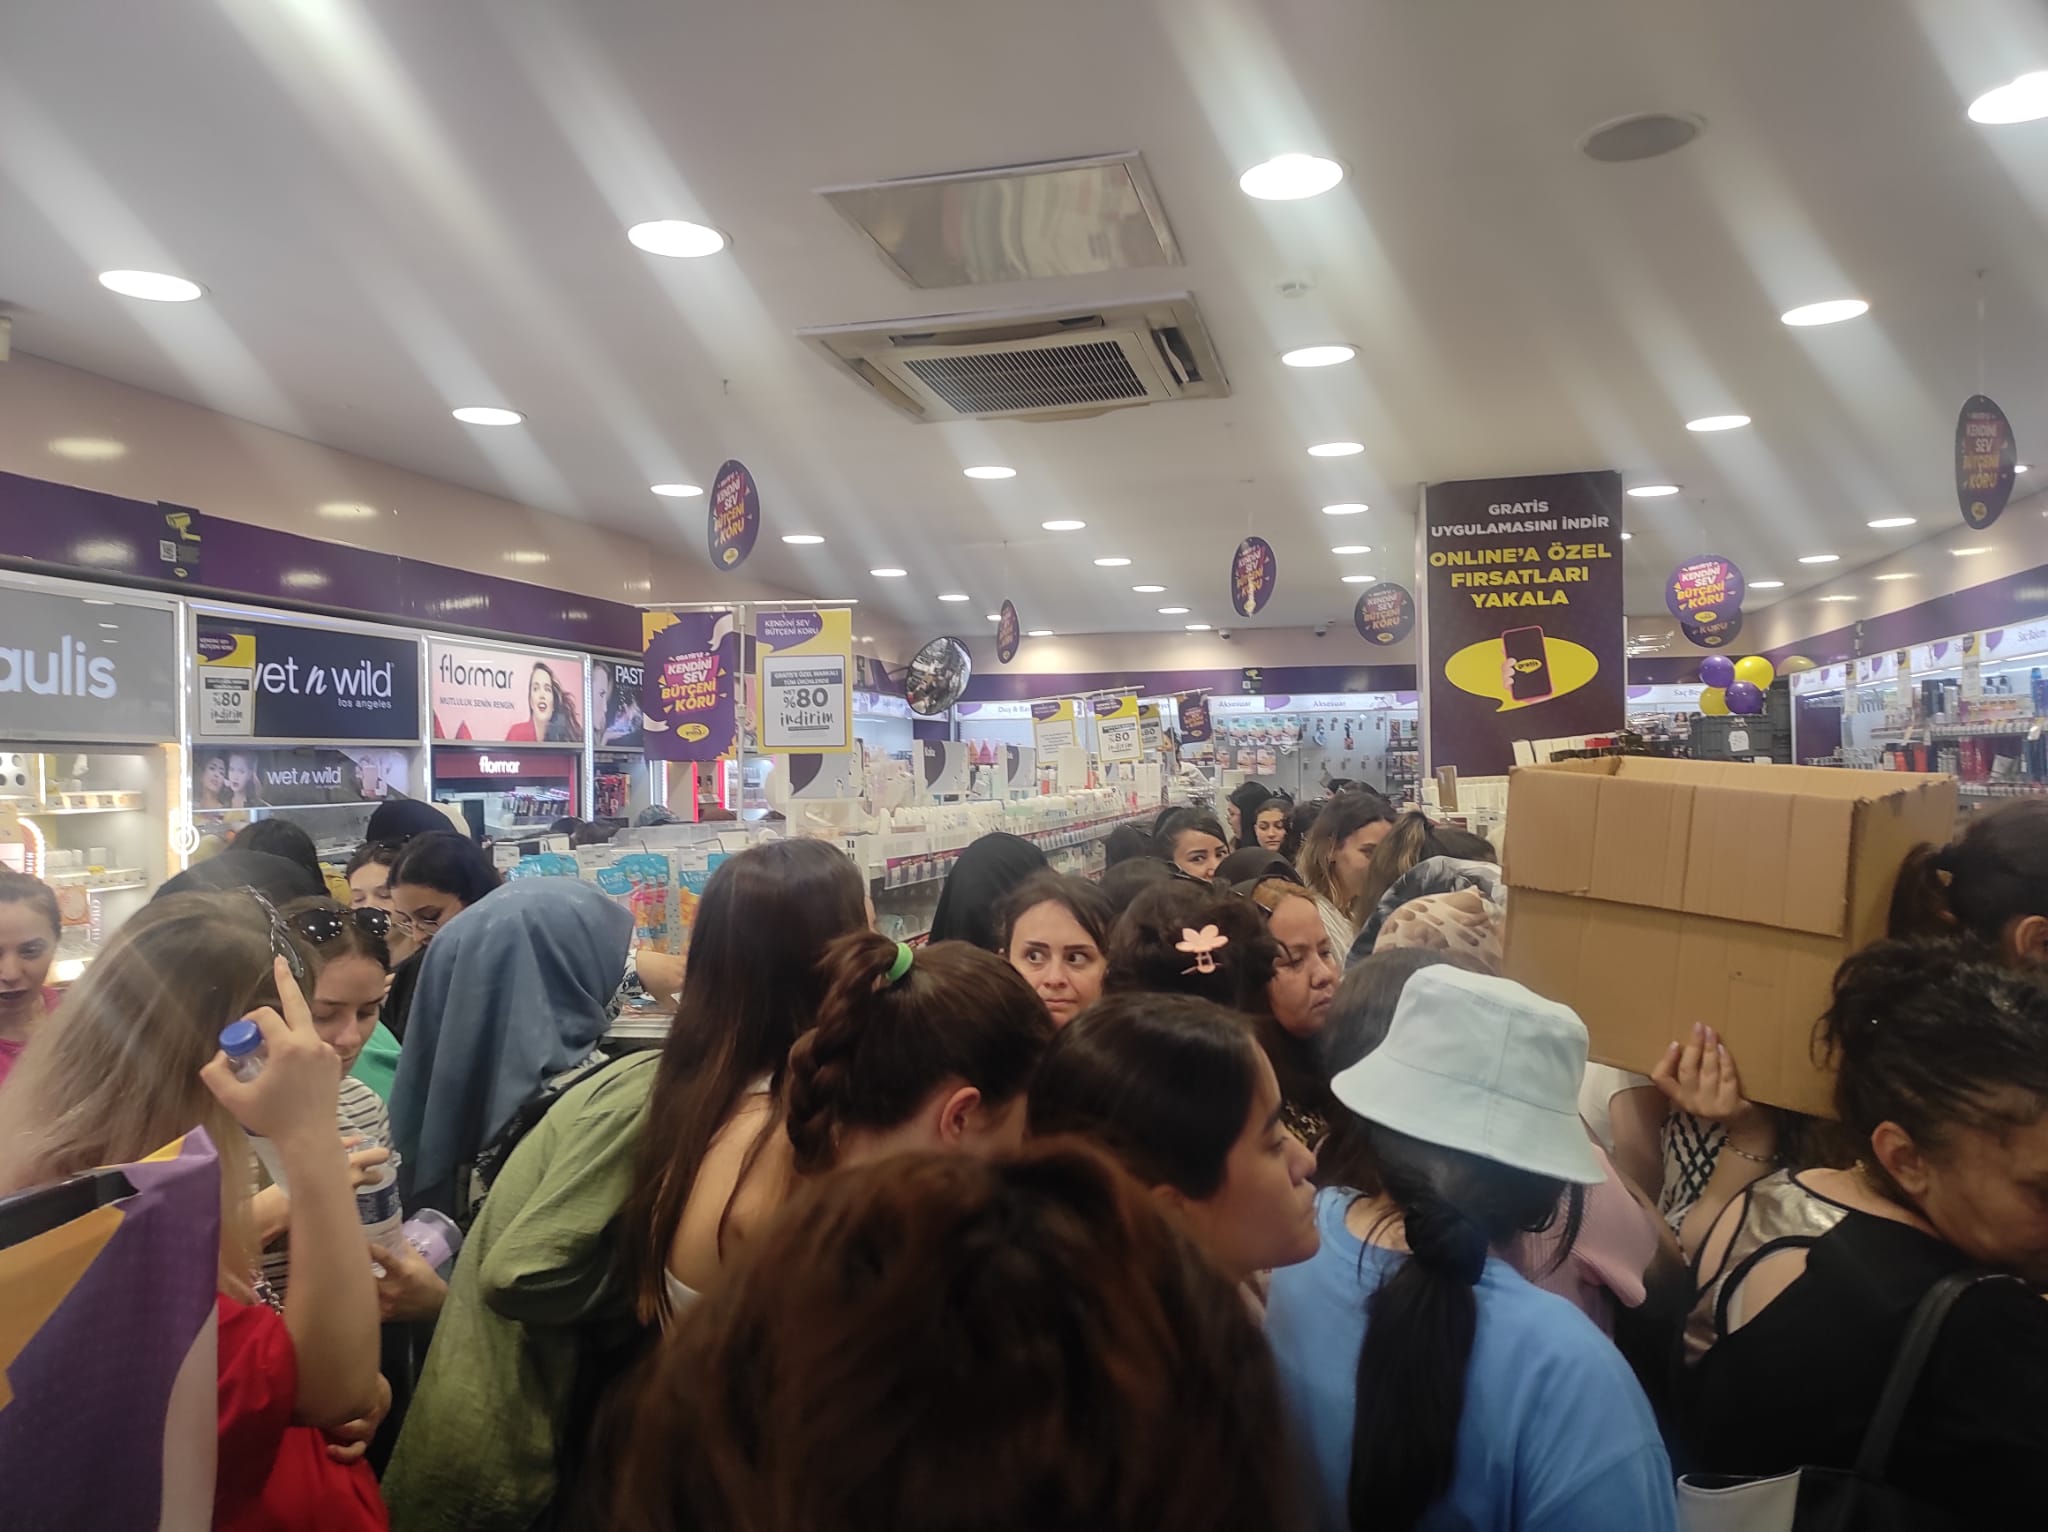 kirikkale-gratis-indirim-kuyrugu-2 Kırıkkale'de İndirim İzdihamı: Gratis Mağazasında Büyük Yoğunluk